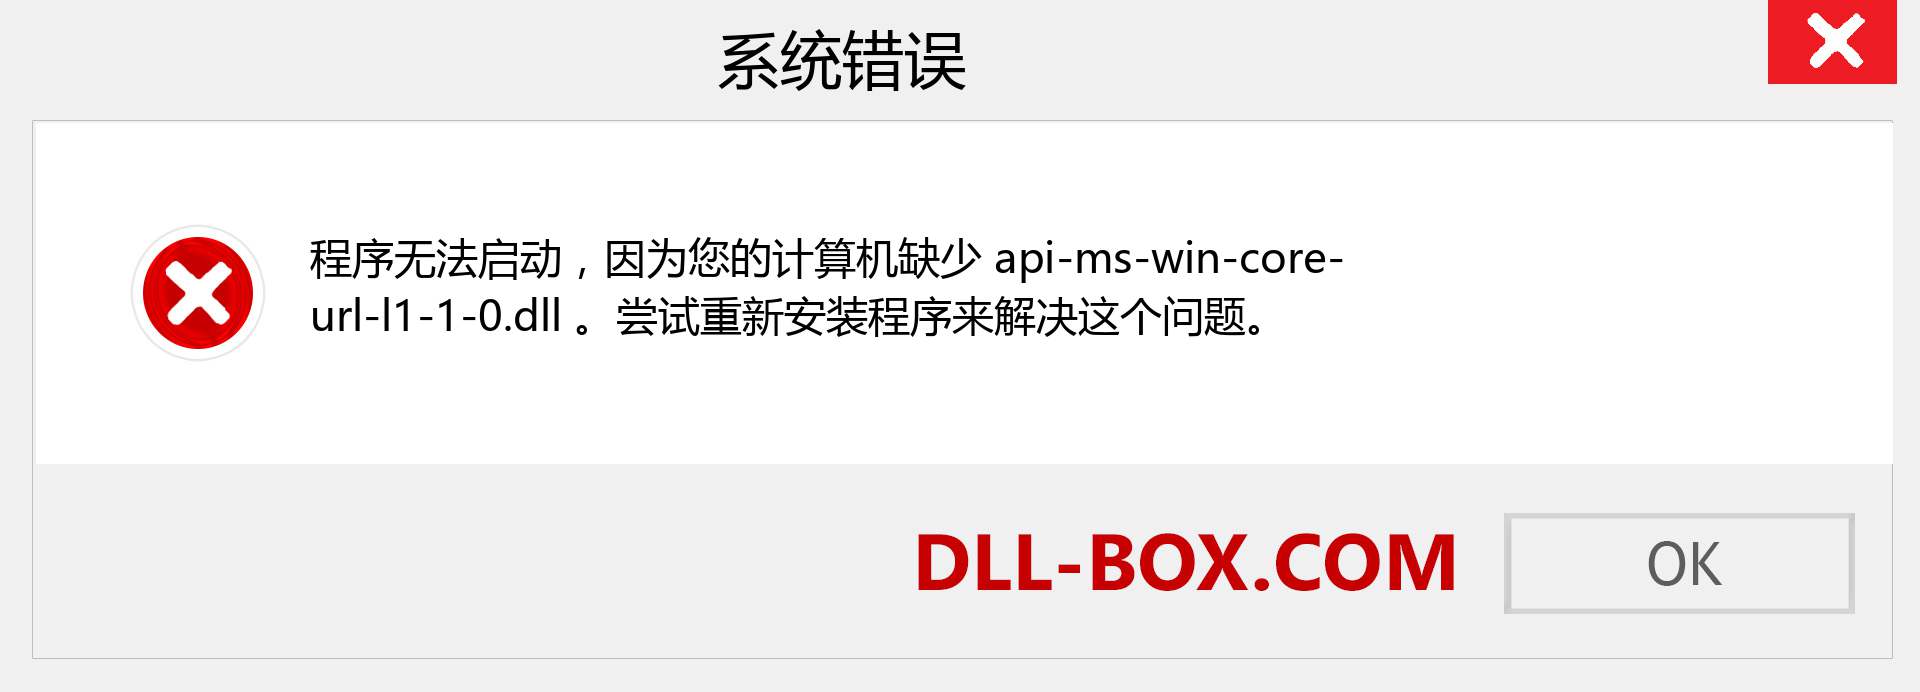 api-ms-win-core-url-l1-1-0.dll 文件丢失？。 适用于 Windows 7、8、10 的下载 - 修复 Windows、照片、图像上的 api-ms-win-core-url-l1-1-0 dll 丢失错误